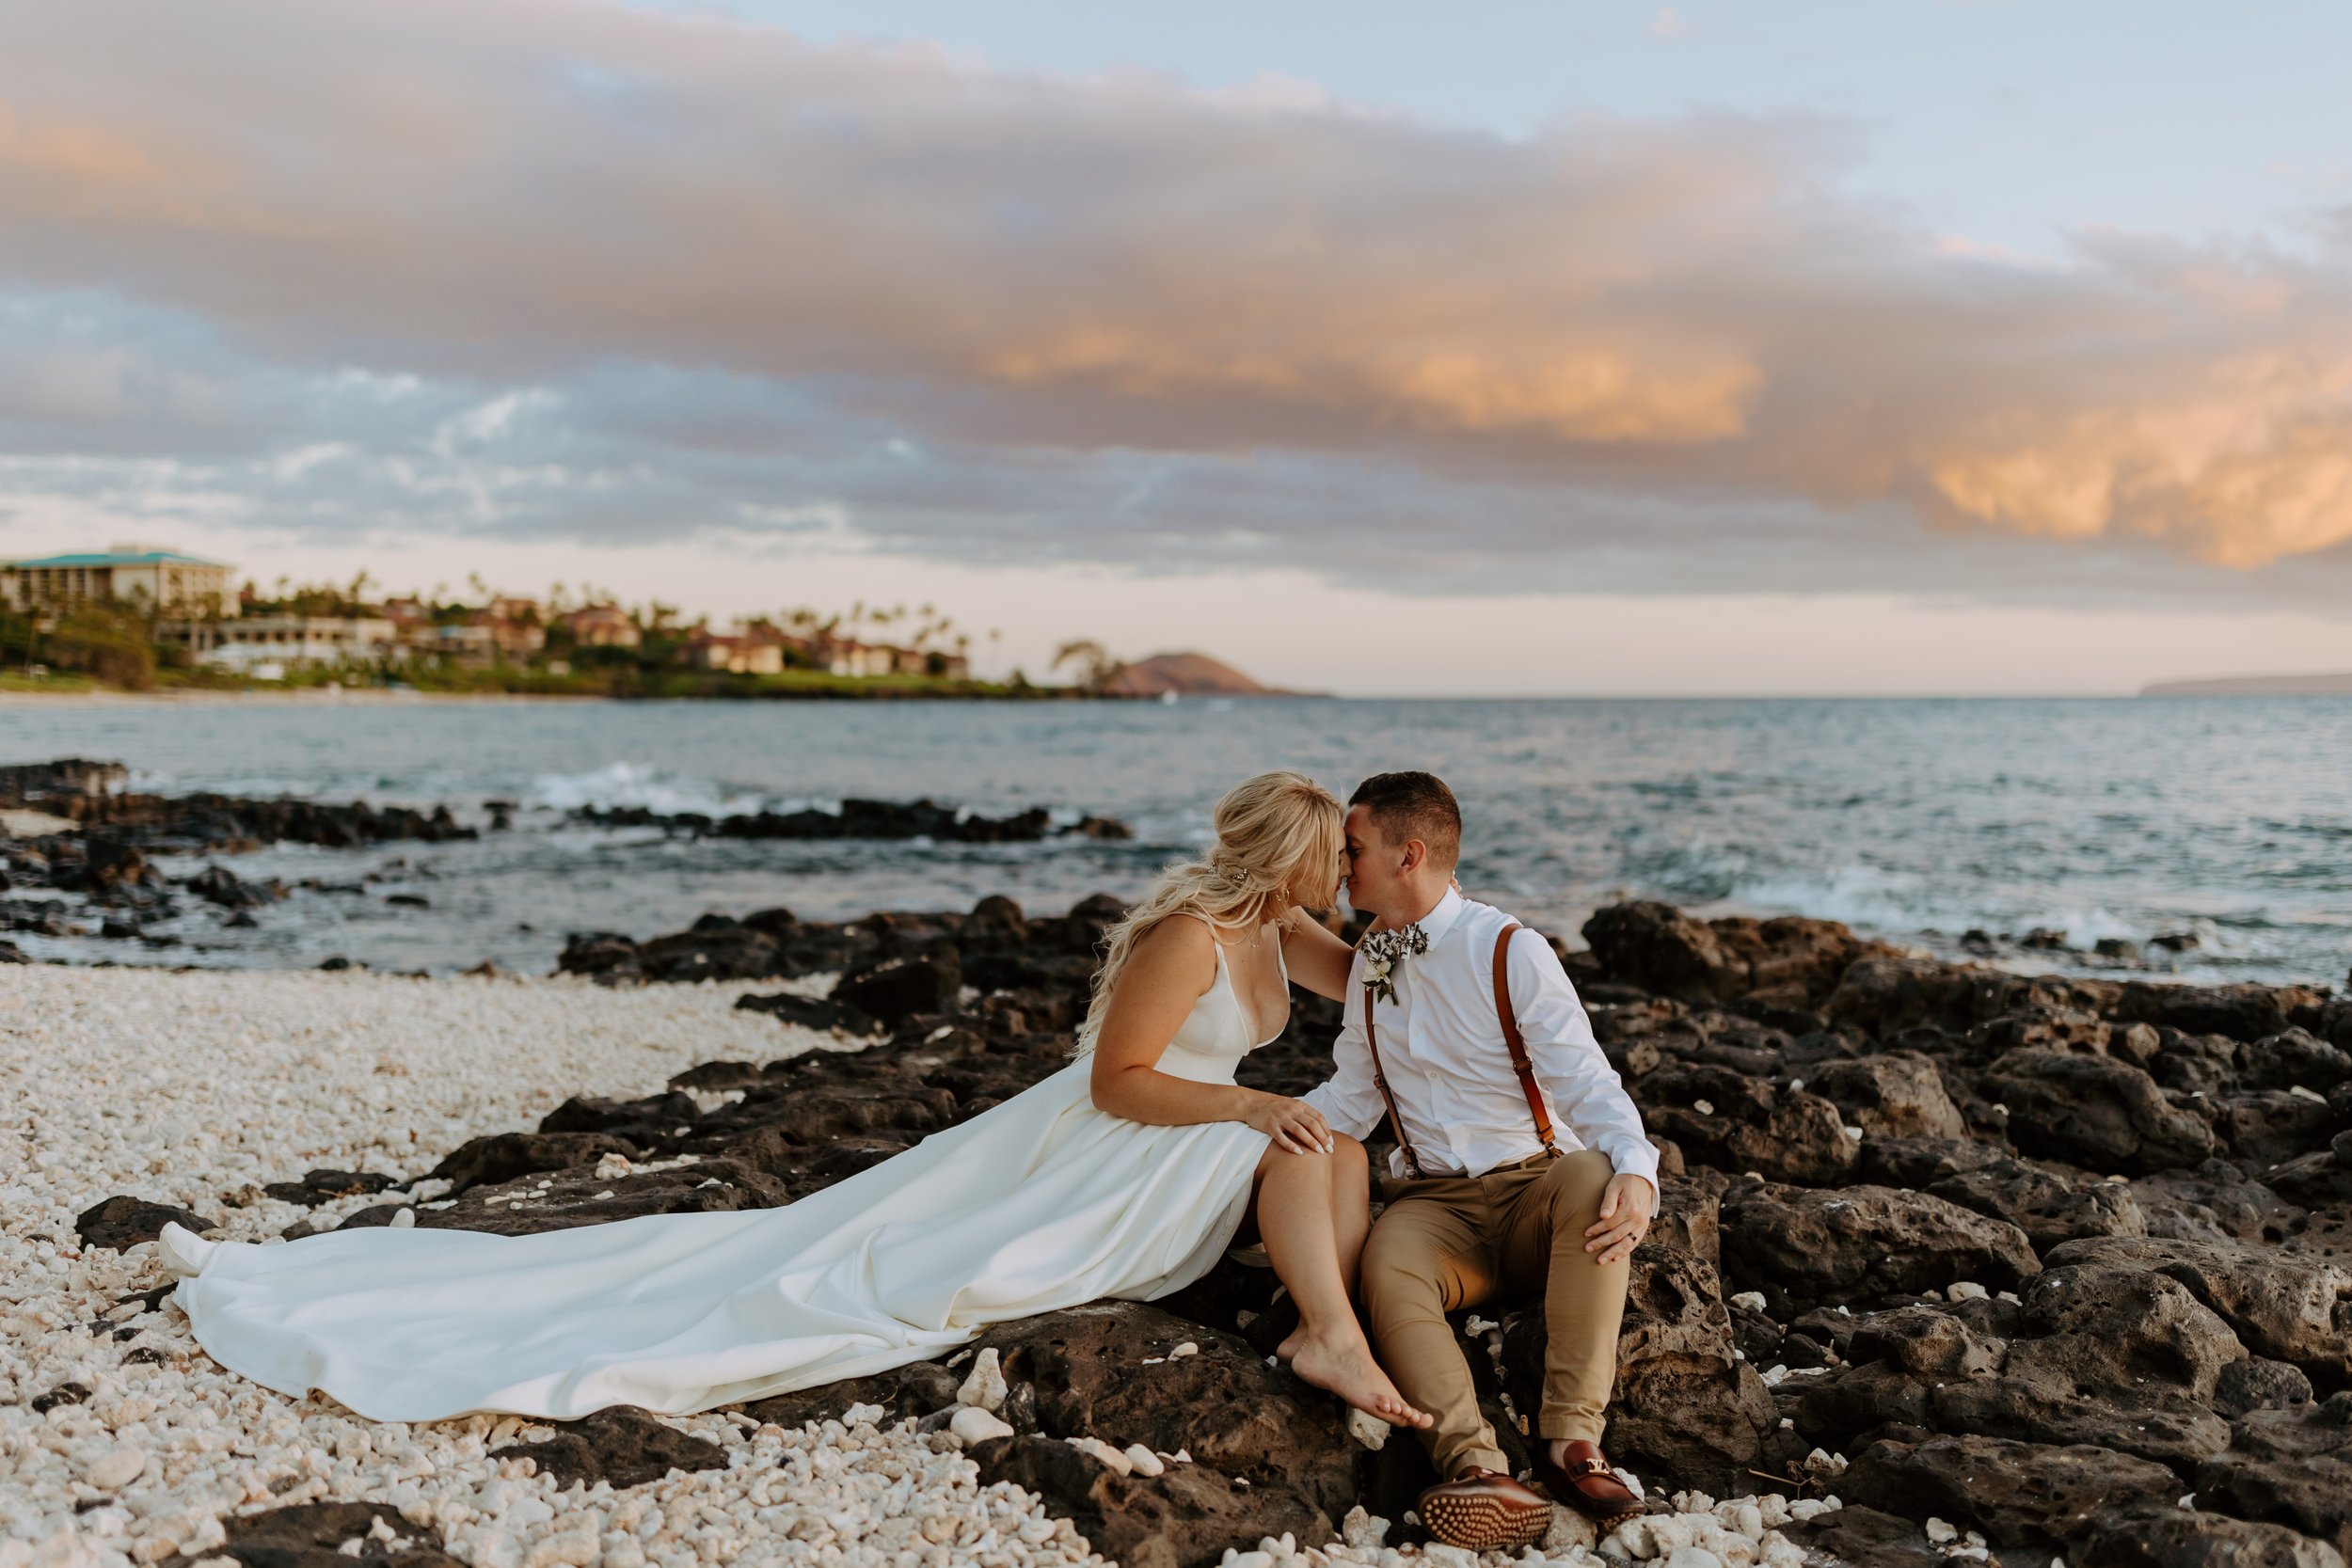 Makaili + Mac Lakin | Grand Wailea Maui Wedding - Hawaii Photographer500.jpg